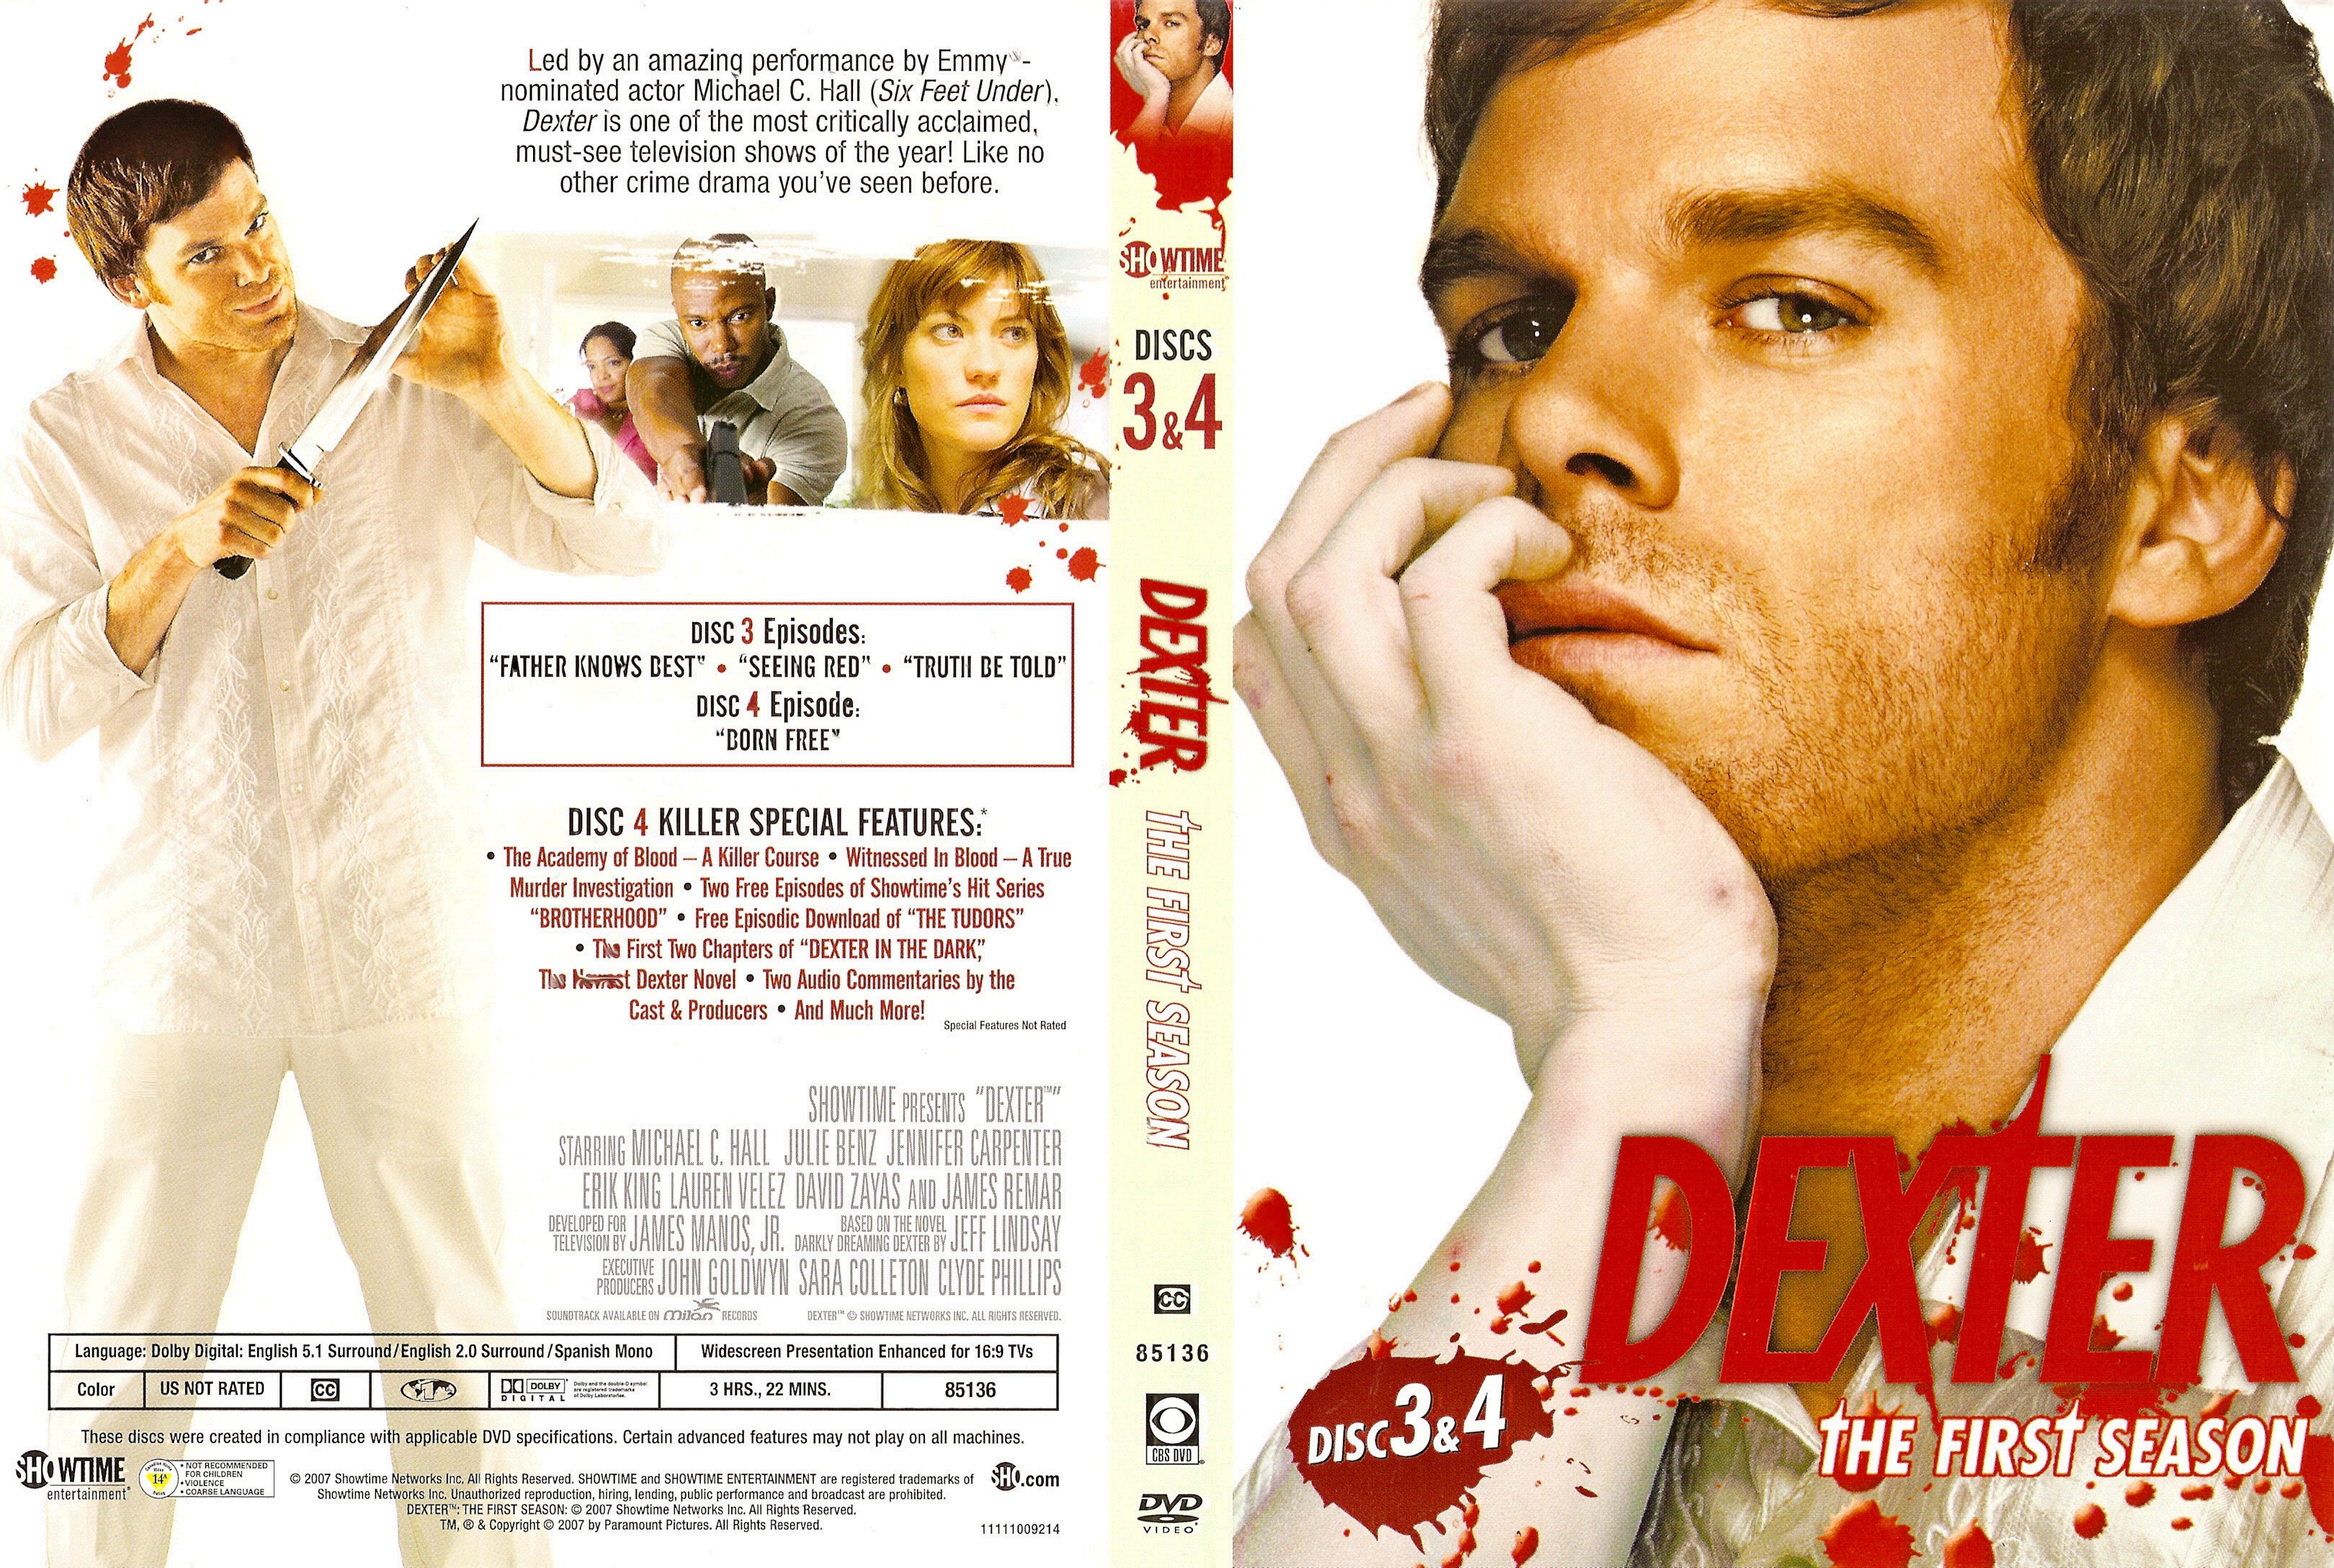 Jaquette DVD Dexter saison 1 DVD 2 (Canadienne)